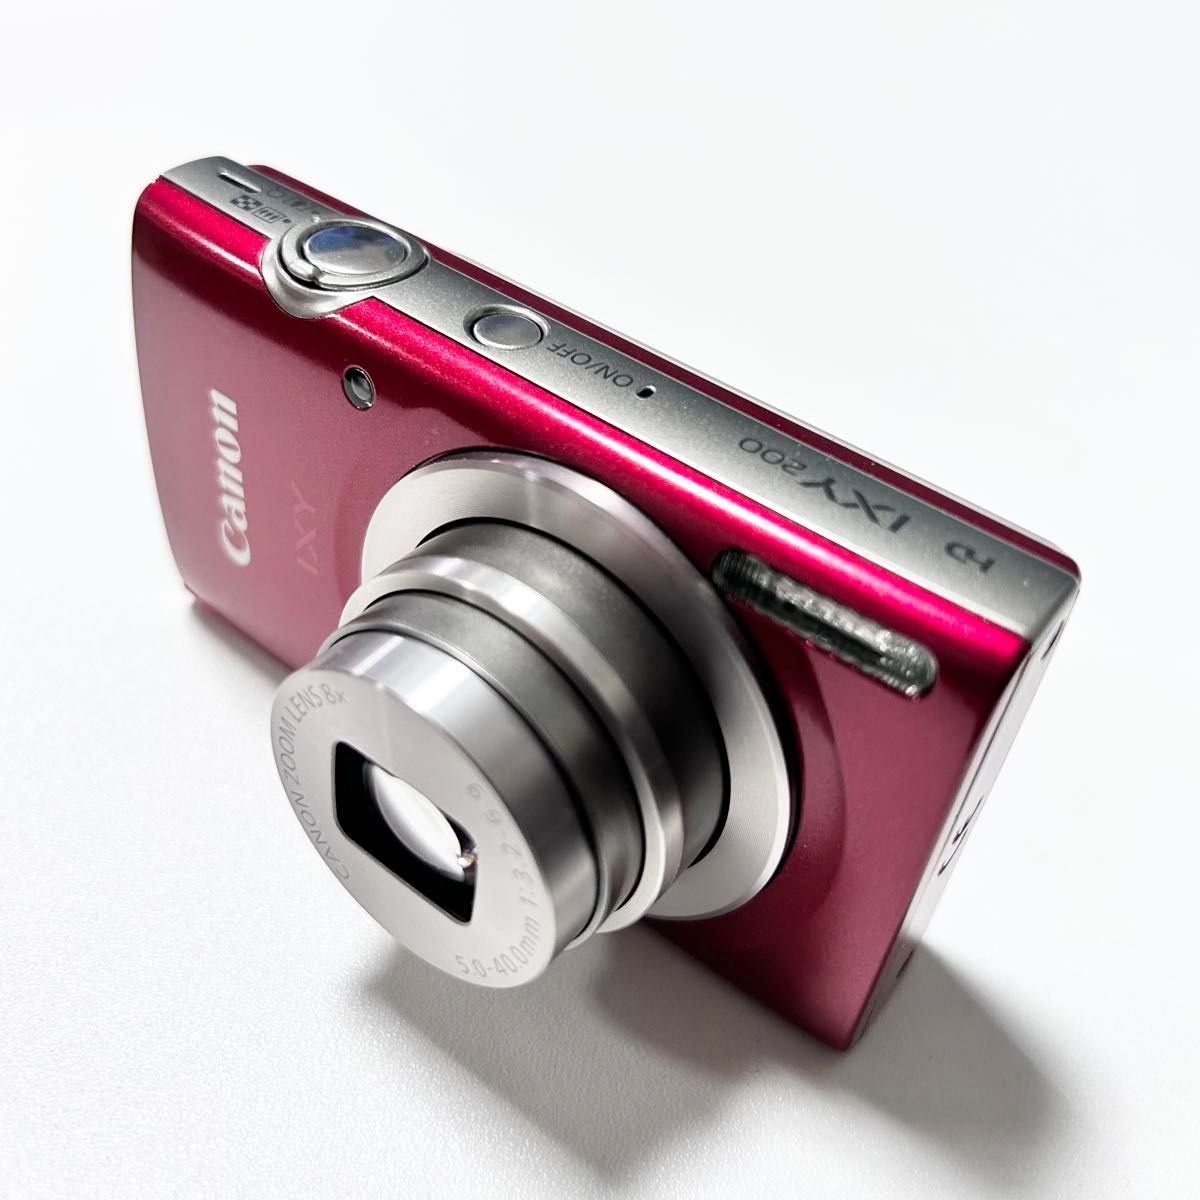 Canon IXY 200 デジカメ コンパクトデジタルカメラ